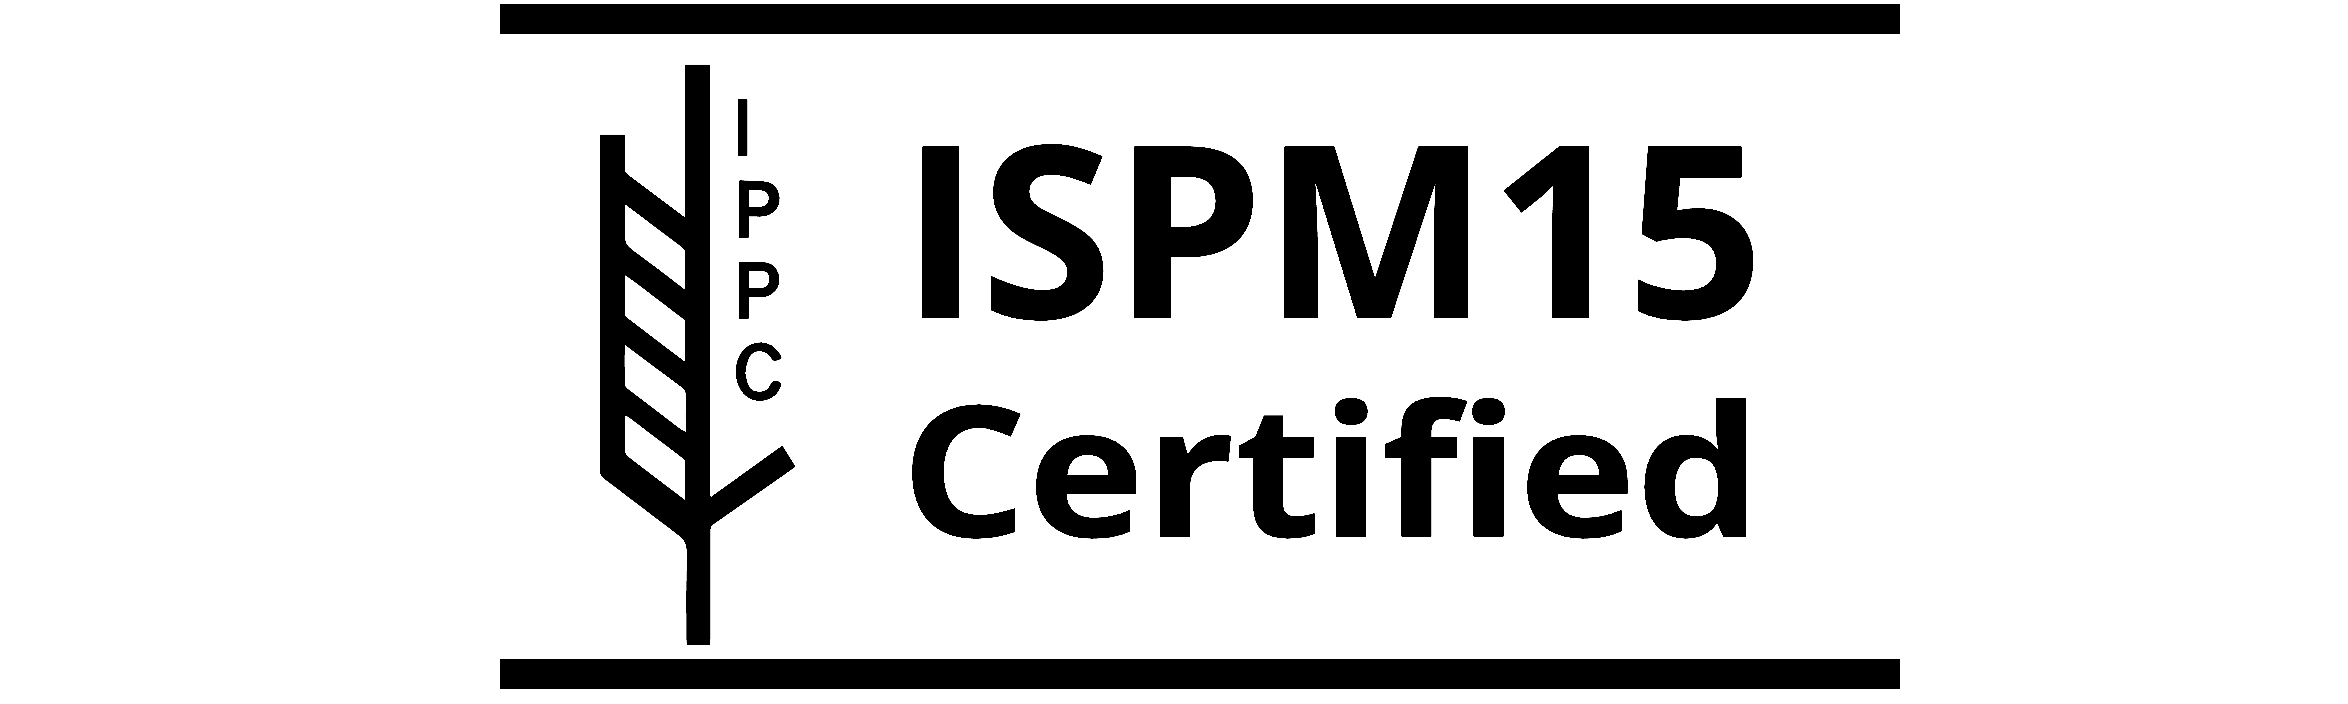 ISPM 15 guidelines for international transport